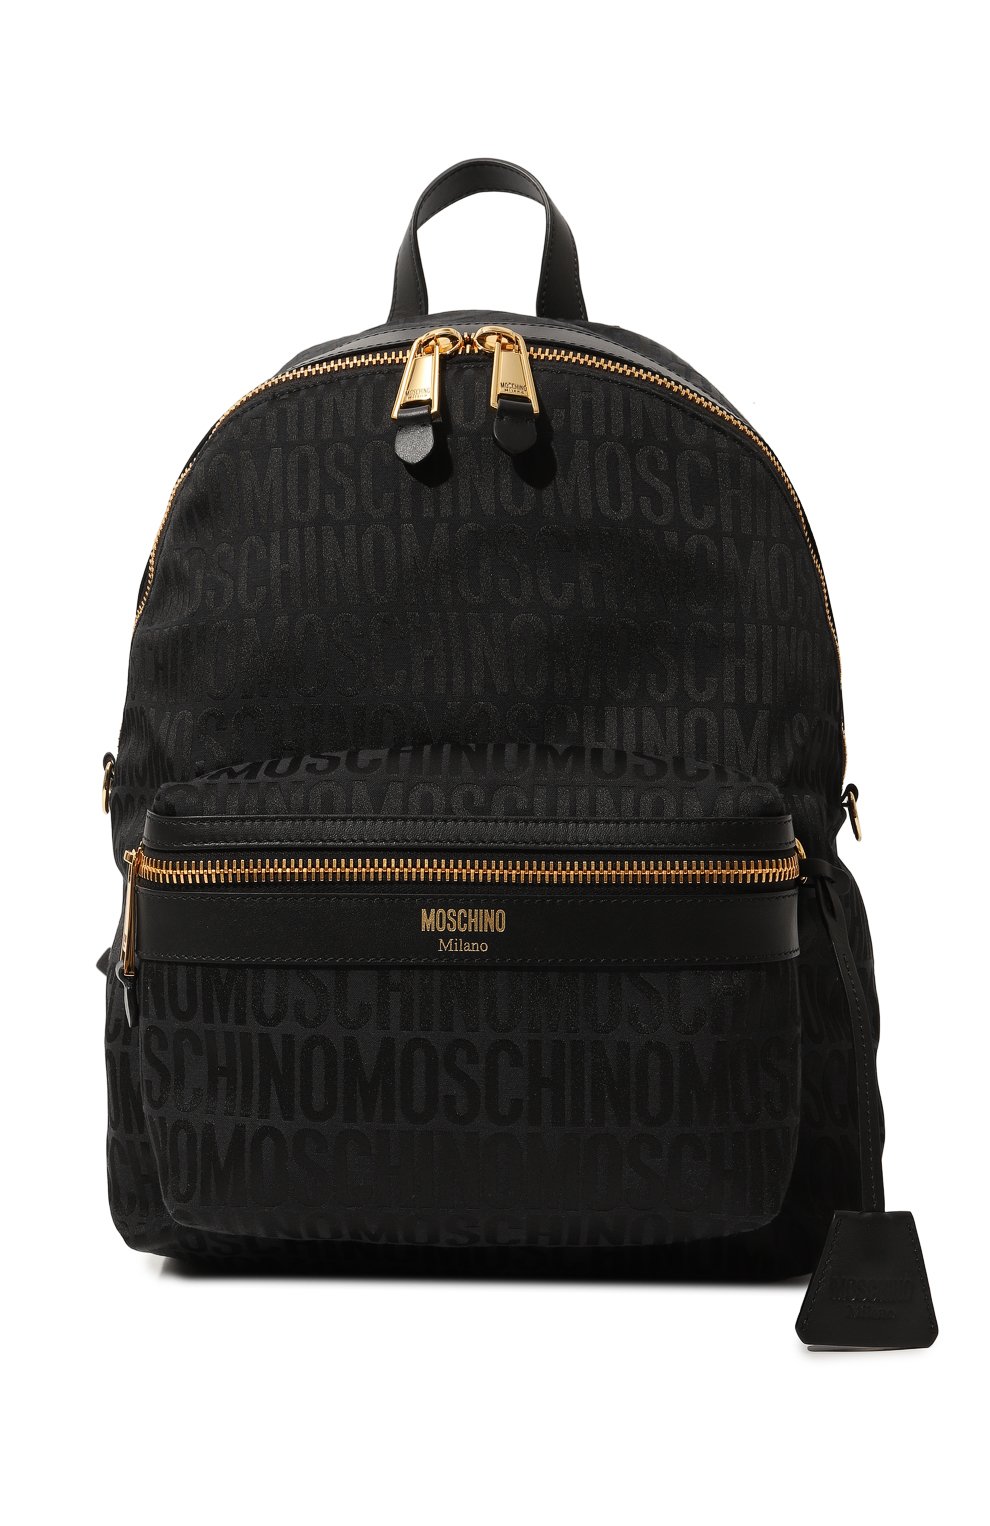 Текстильный рюкзак Moschino черного цвета